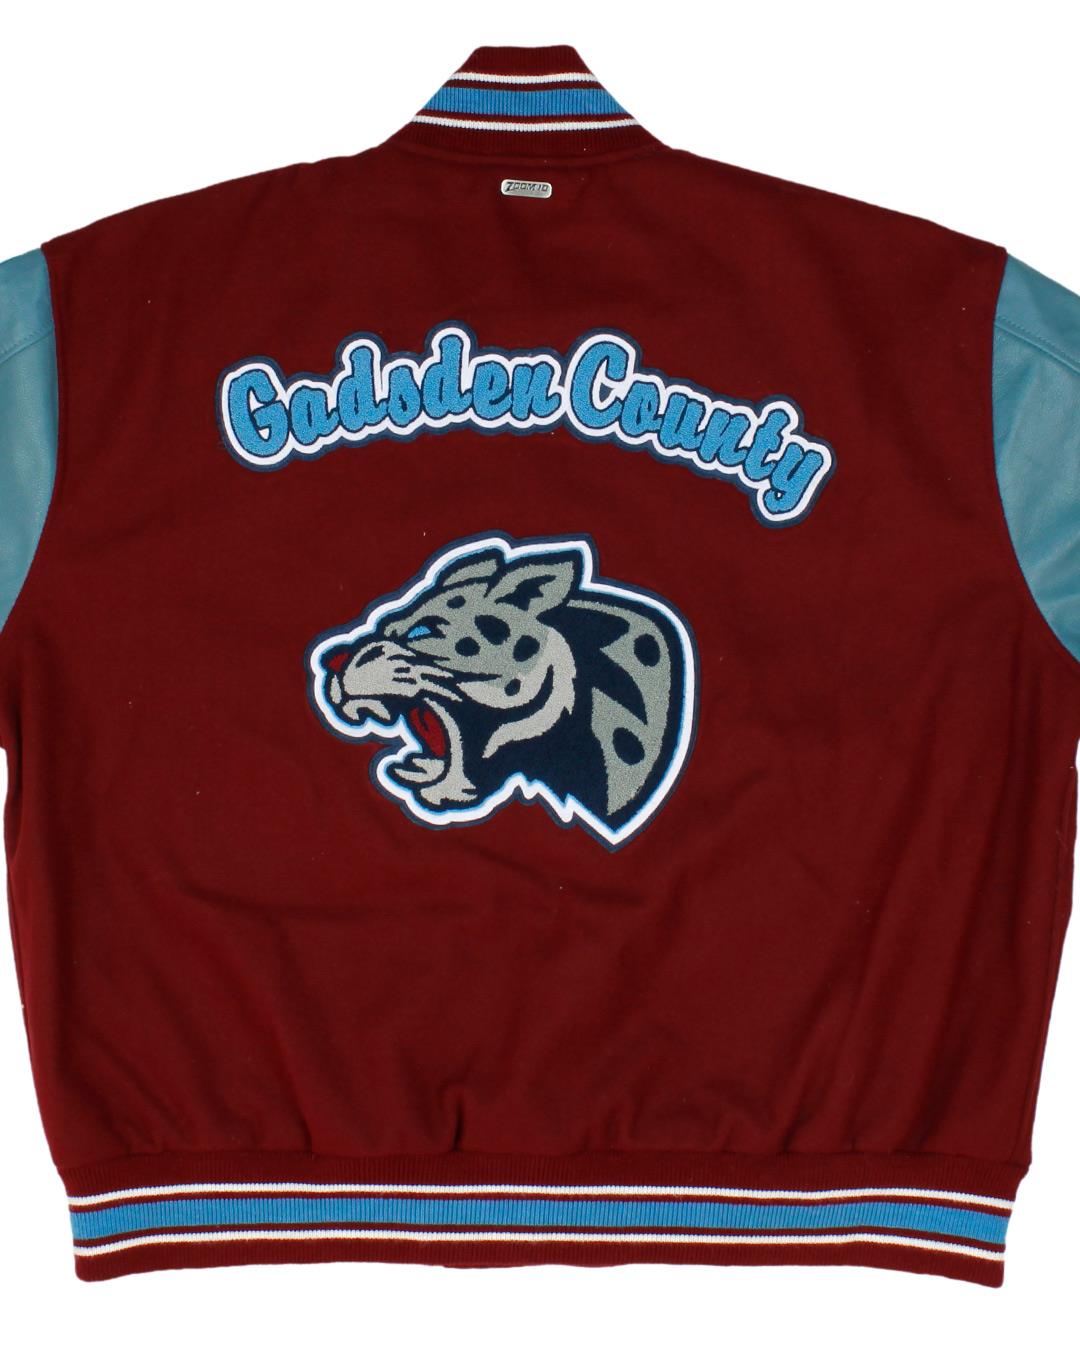 Gadsden County High School Letterman Jacket, Havana, FL - Back